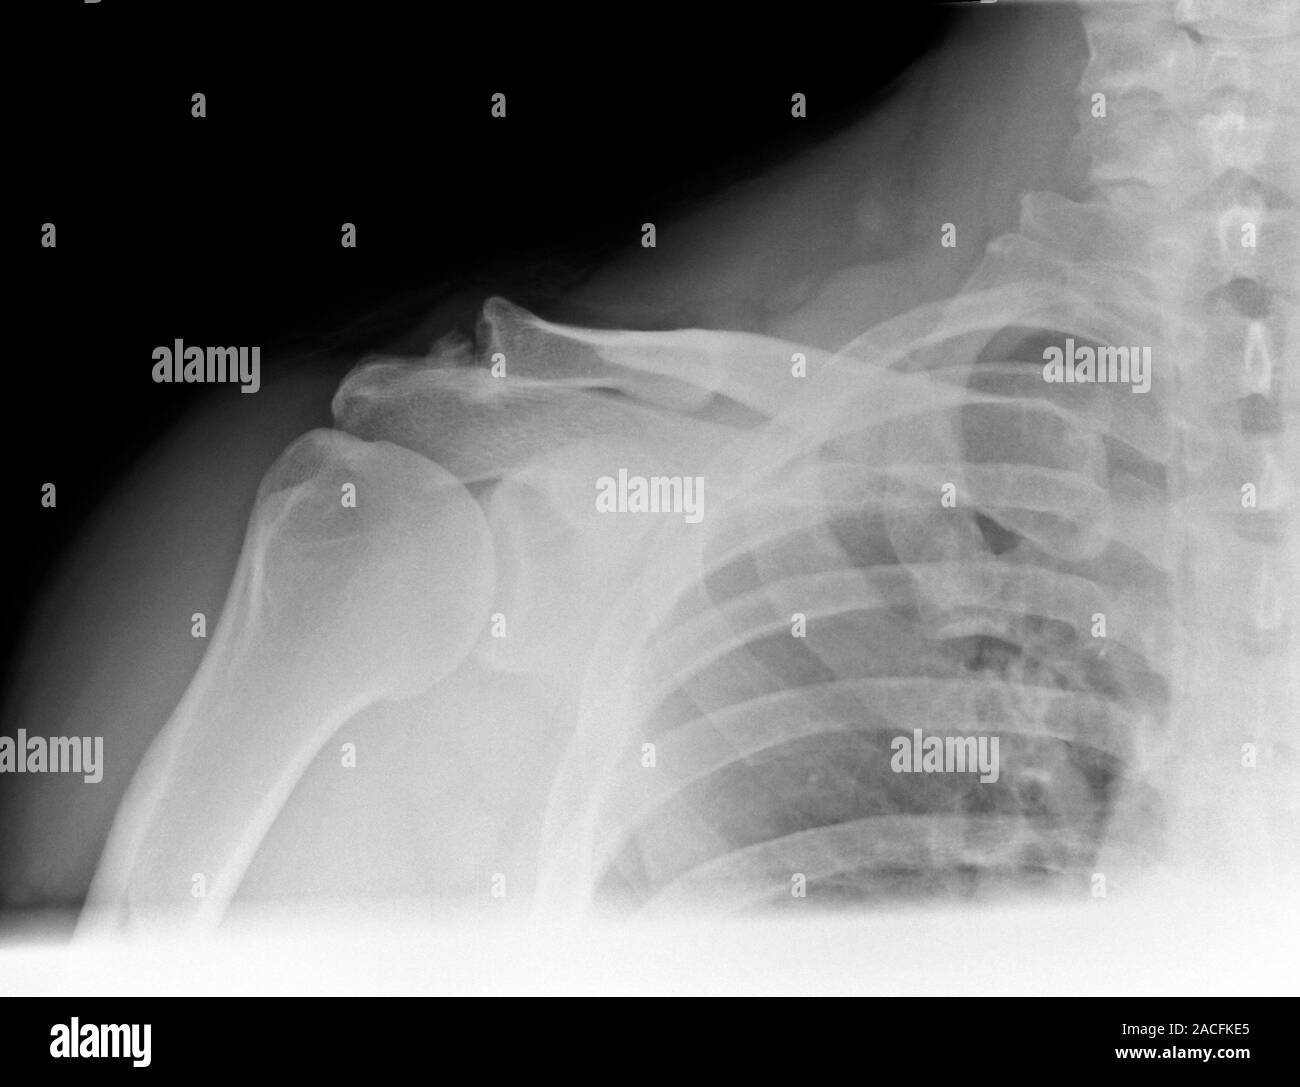 L'arthrose de l'épaule. X-ray du genou d'un patient souffrant d'arthrose  sévère. La fin de l'humérus (os du bras supérieur, à gauche) peut être vu t  Photo Stock - Alamy